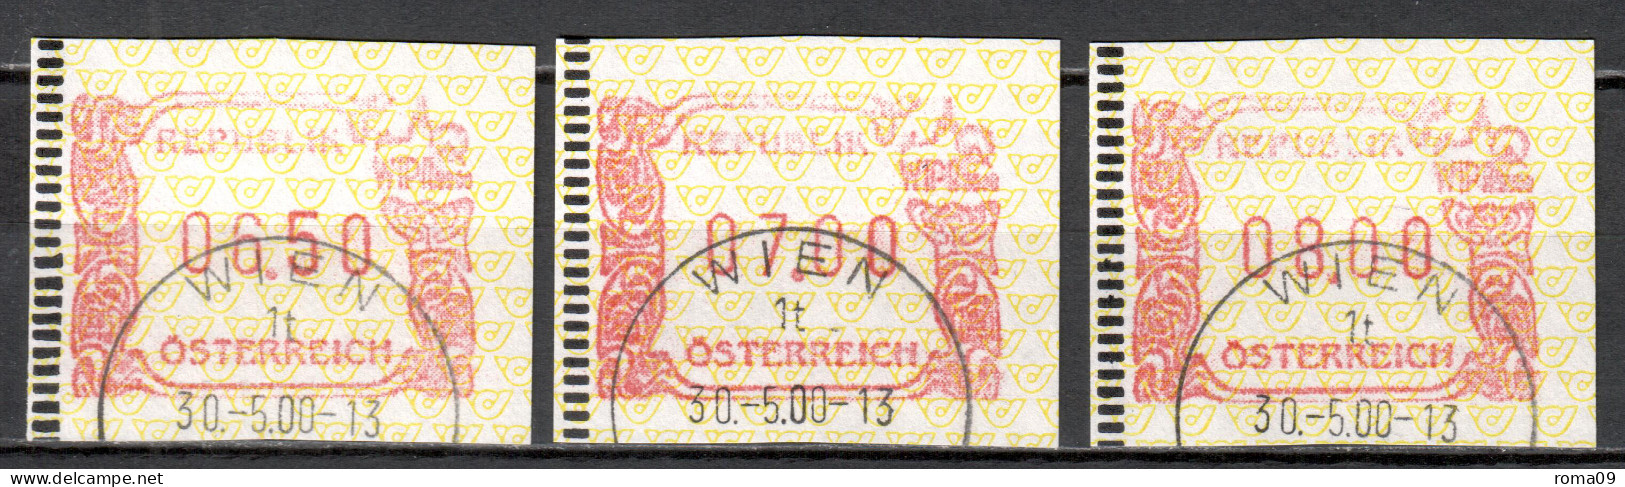 MiNr. ATM 4 (3x), Internationale Briefmarkenausstellung WIPA 2000, Wien; Gestempelt: B - Timbres De Distributeurs [ATM]